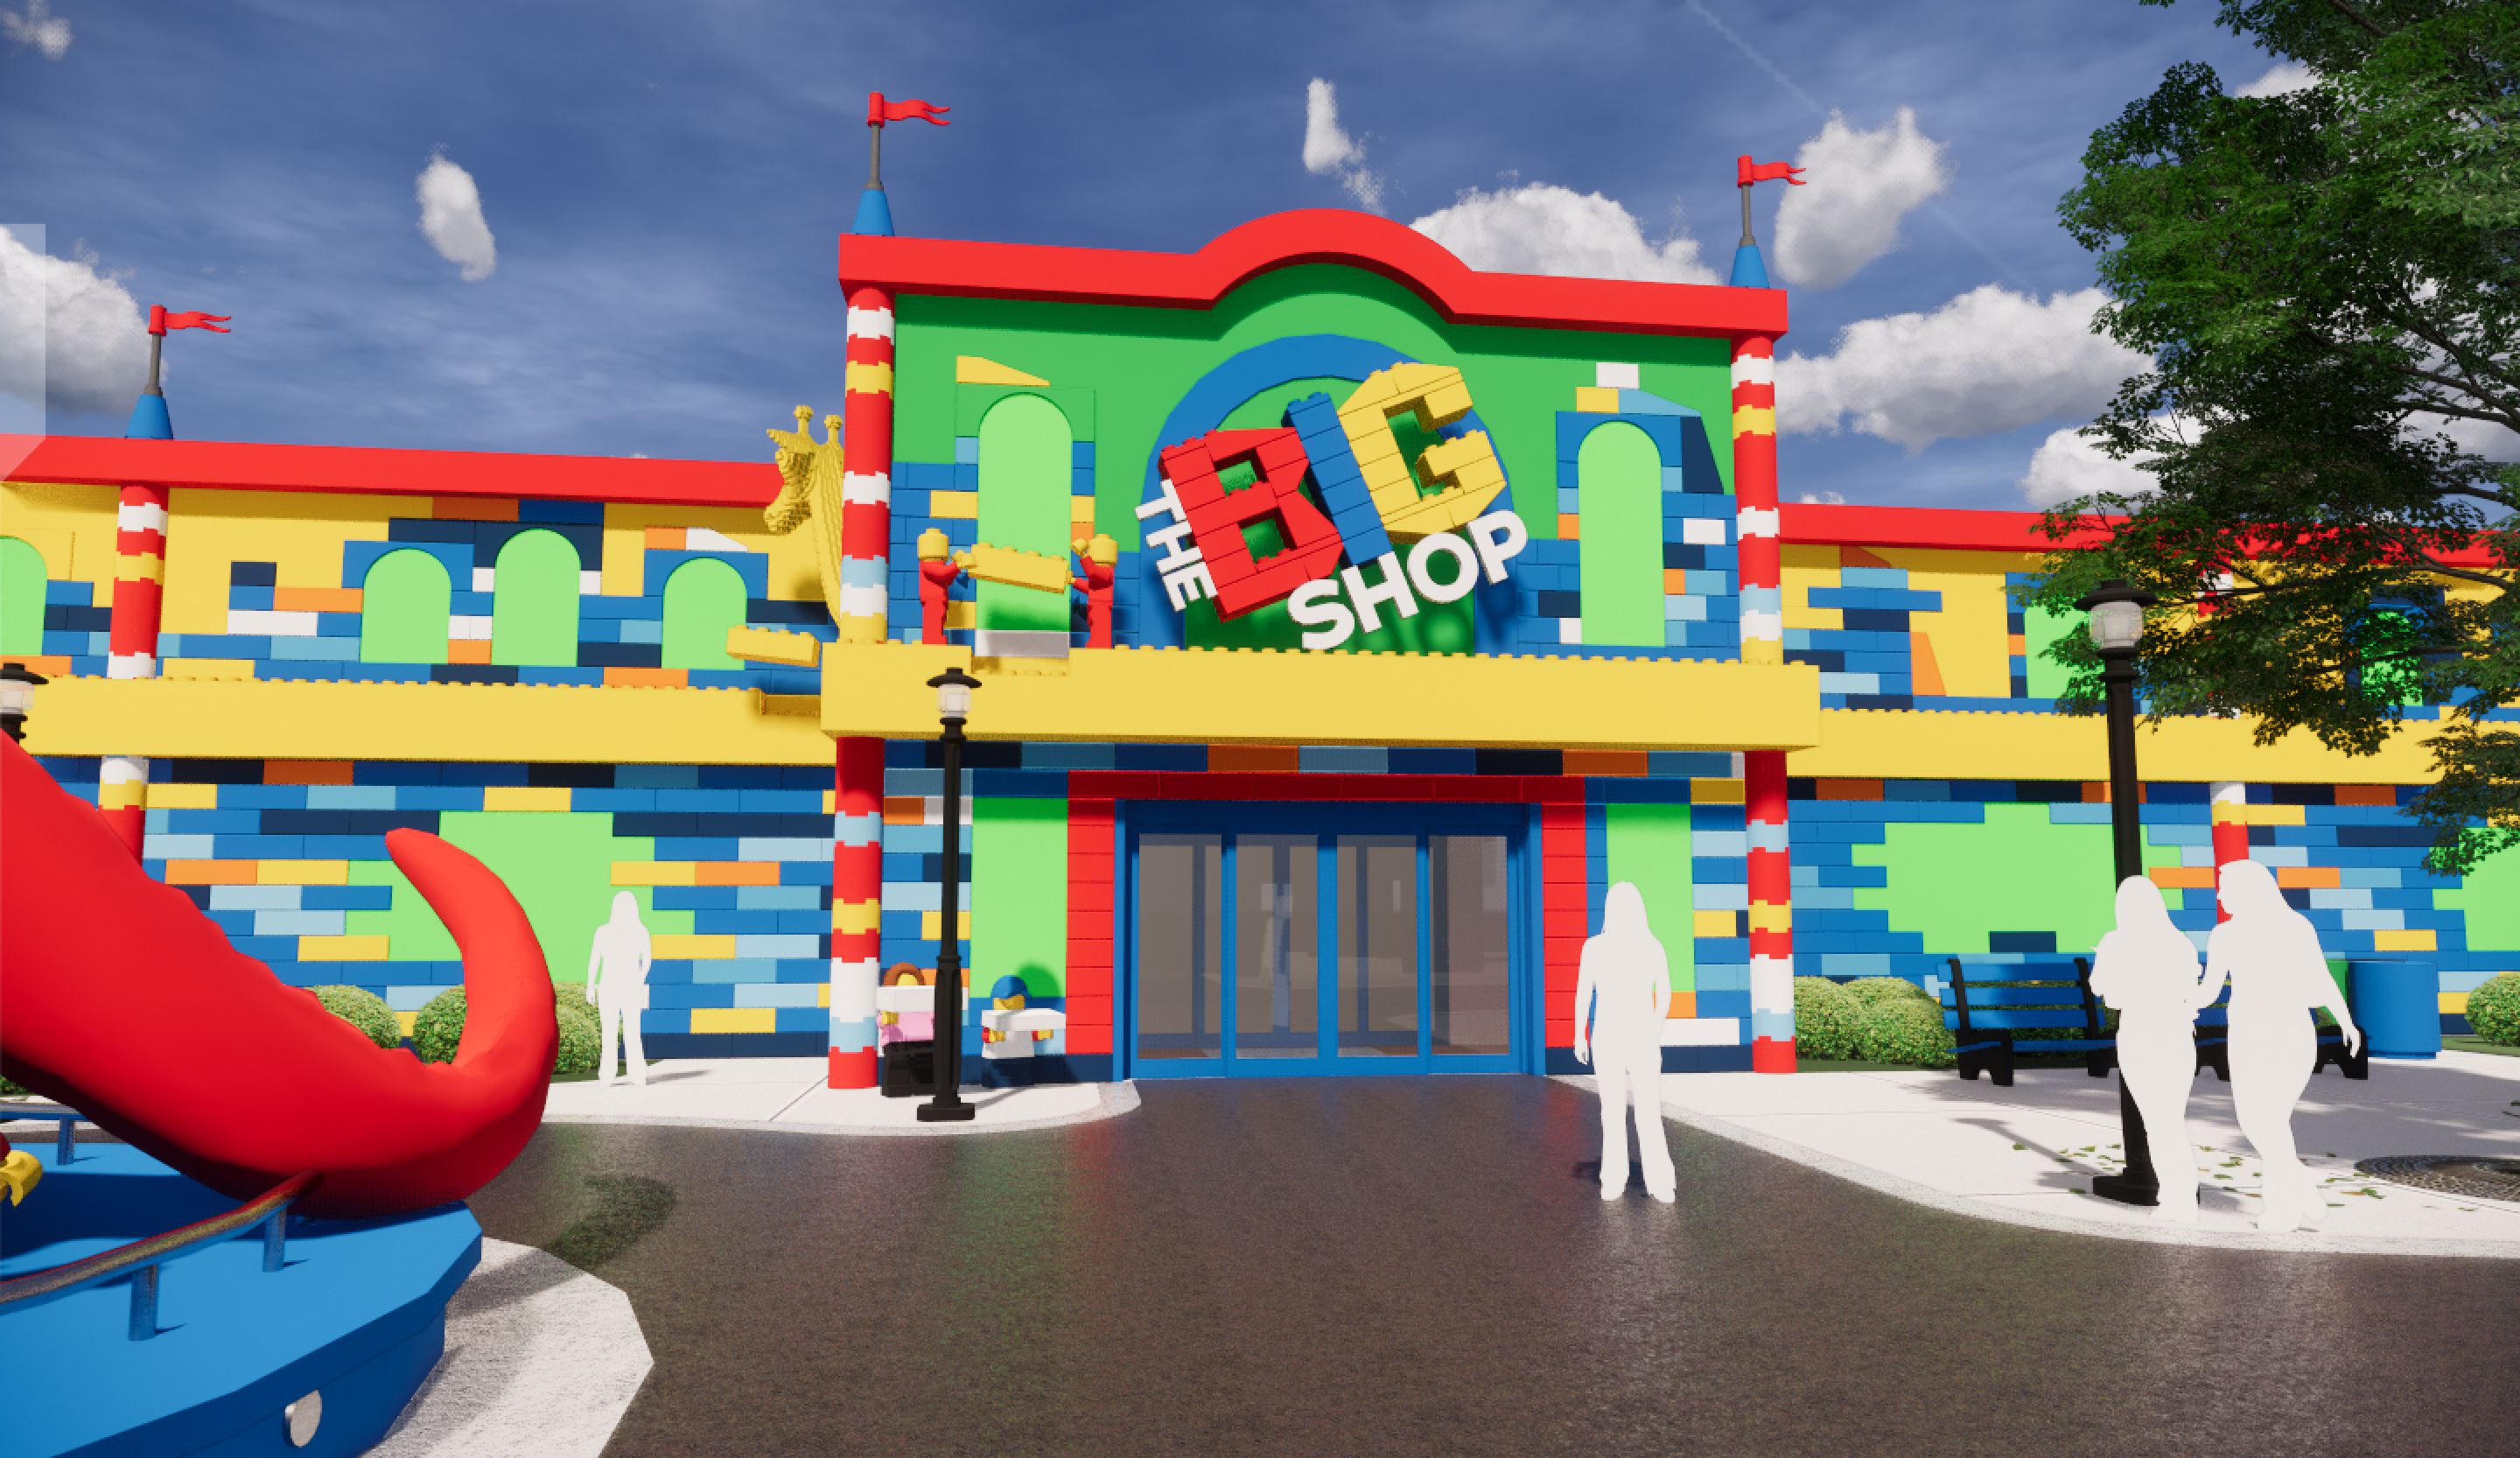 The BIG Shop at LEGOLAND New York